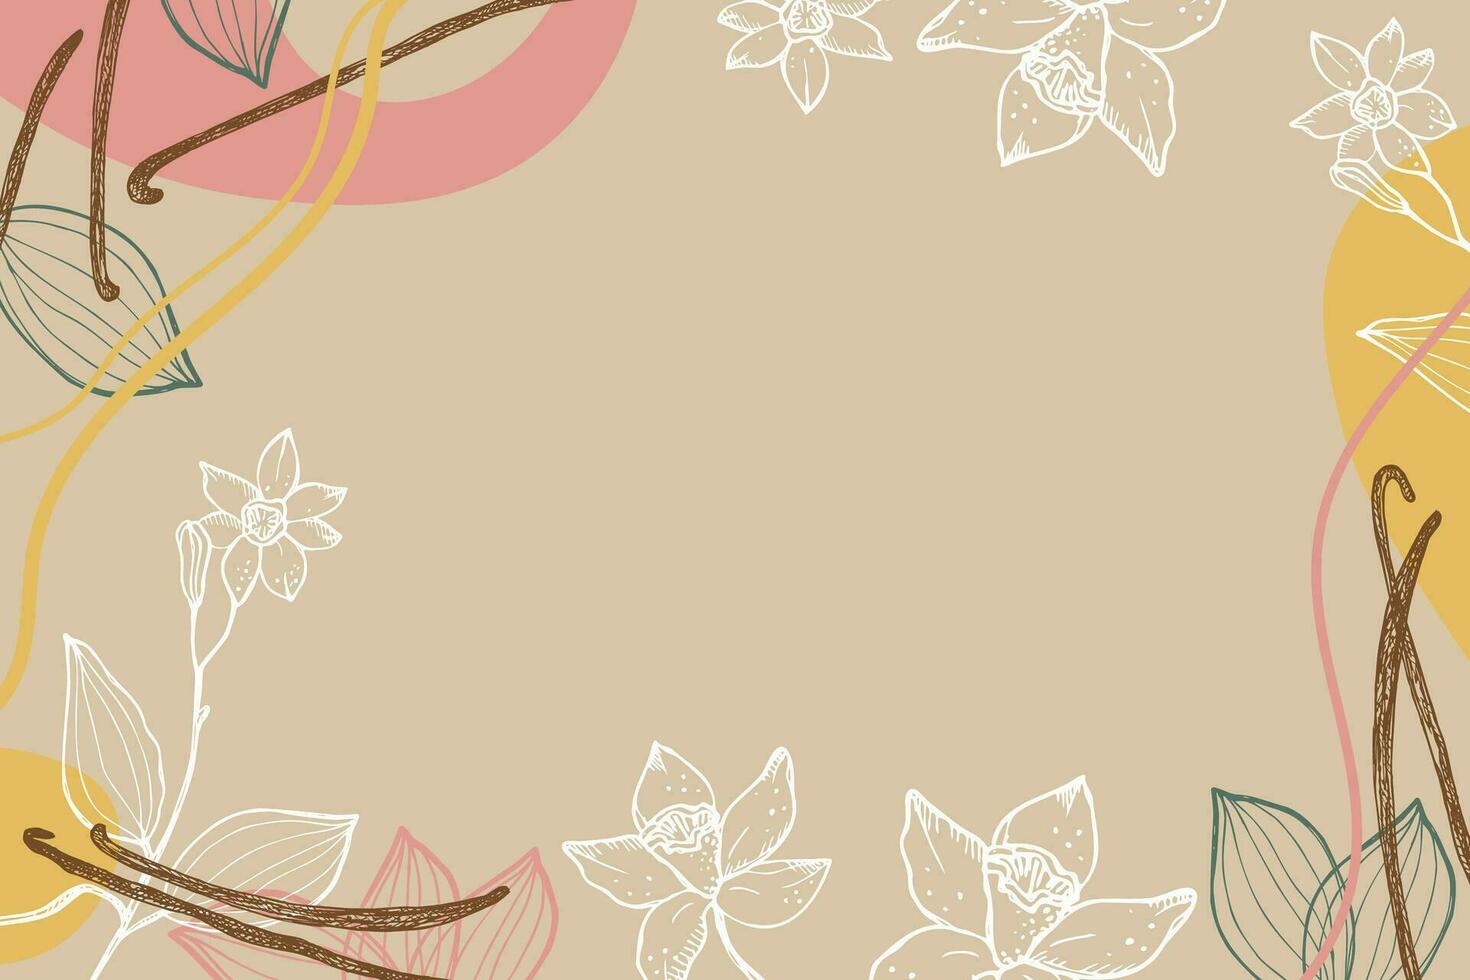 vanilj märka mall bakgrund för text. blomma och pinnar av vanilj växt vektor illustration med skida, doftande kryddor. för etikett, krydda förpackning, kort, baner. hand dragen abstrakt design